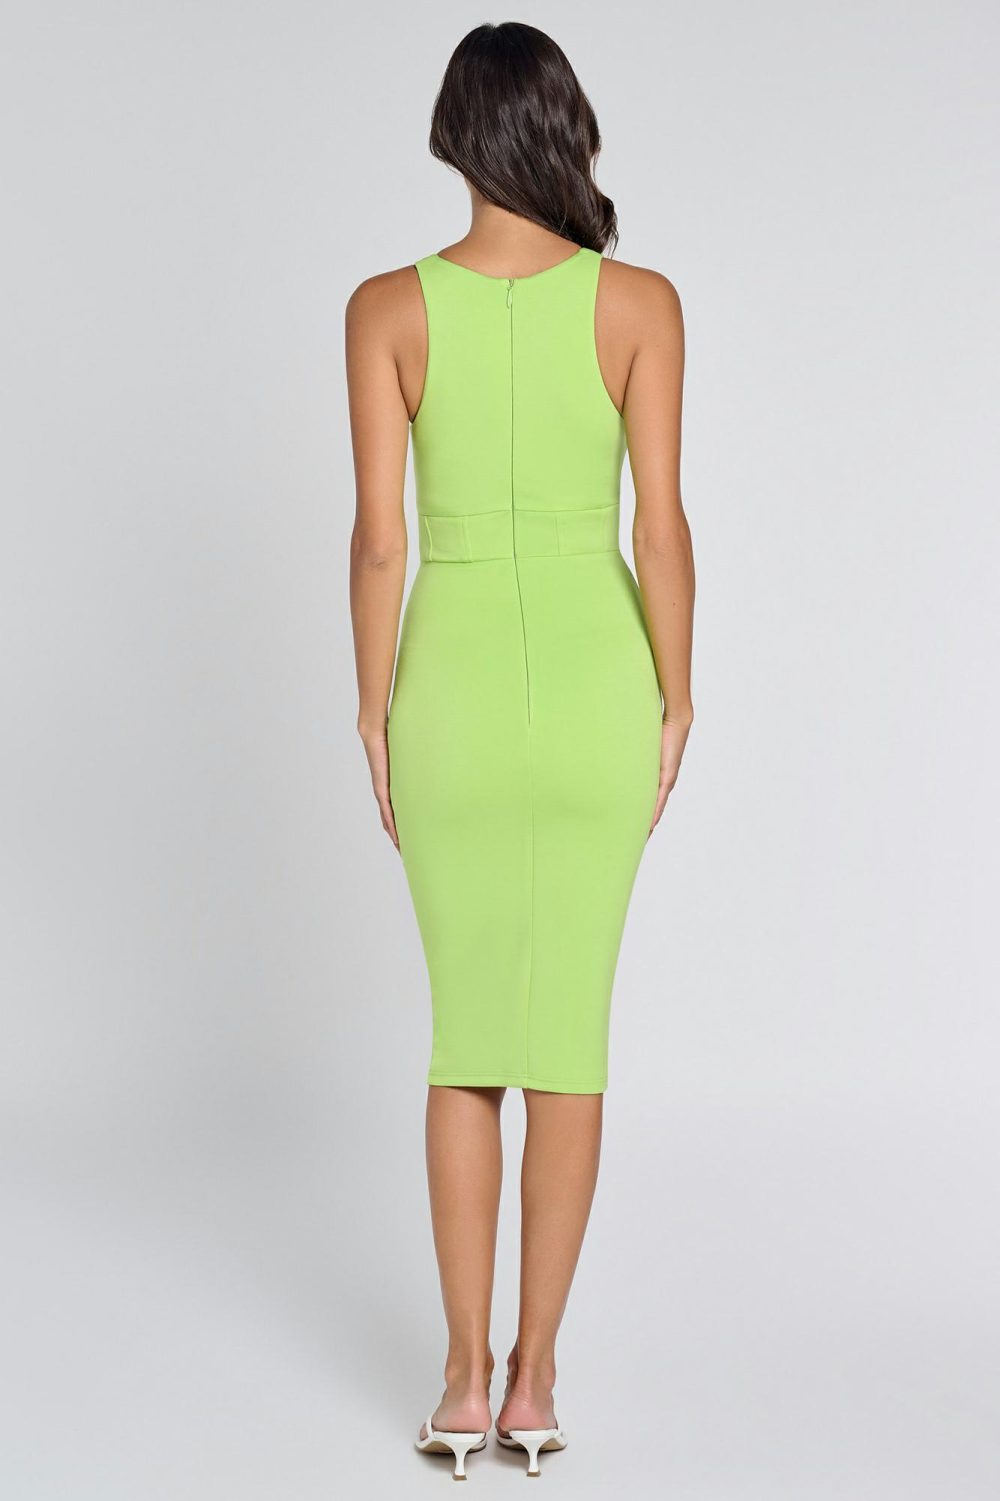 Ladies Dress Colour is Lime